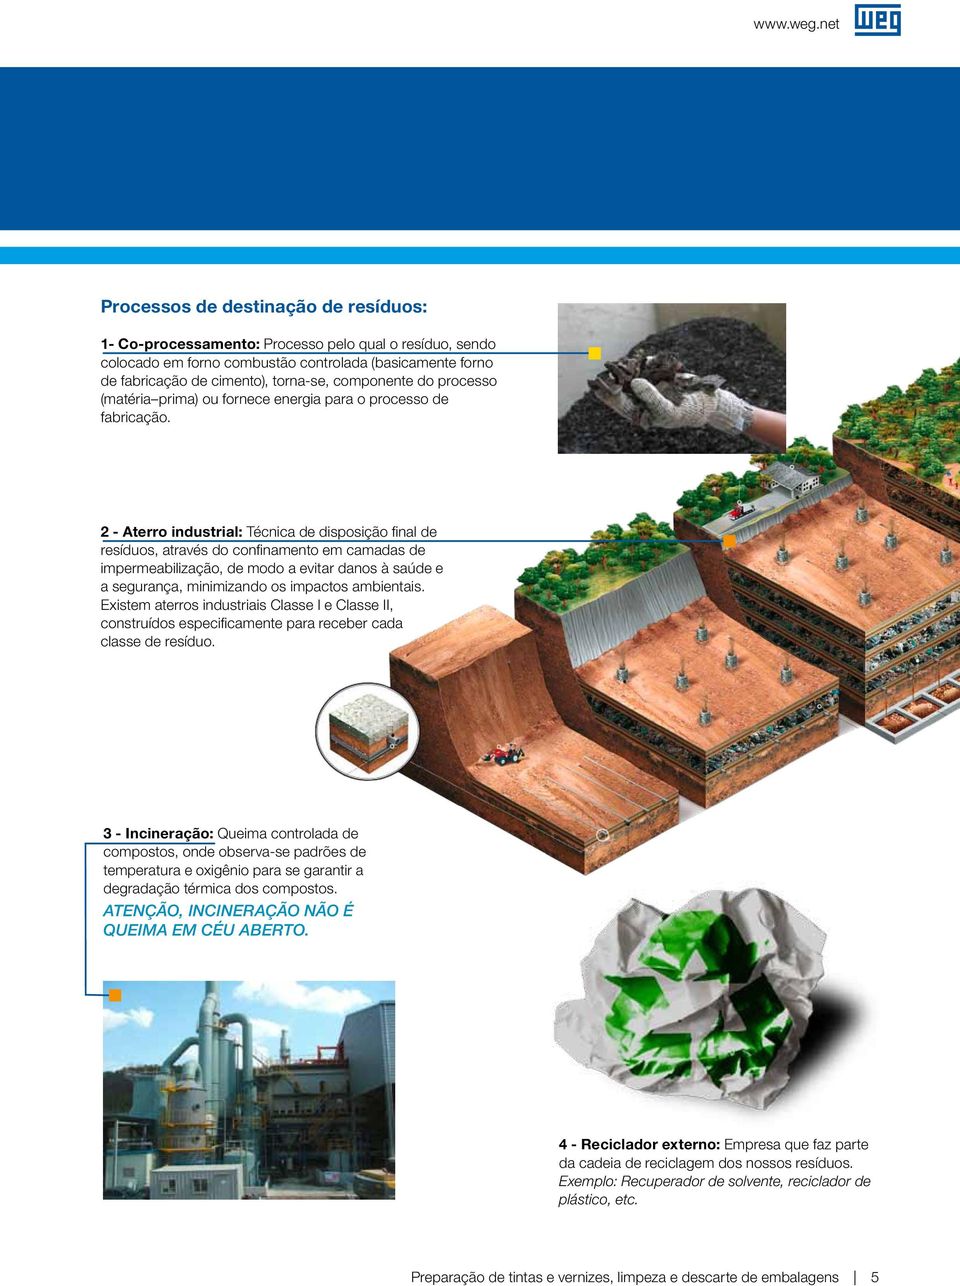 2 - Aterro industrial: Técnica de disposição final de resíduos, através do confinamento em camadas de impermeabilização, de modo a evitar danos à saúde e a segurança, minimizando os impactos